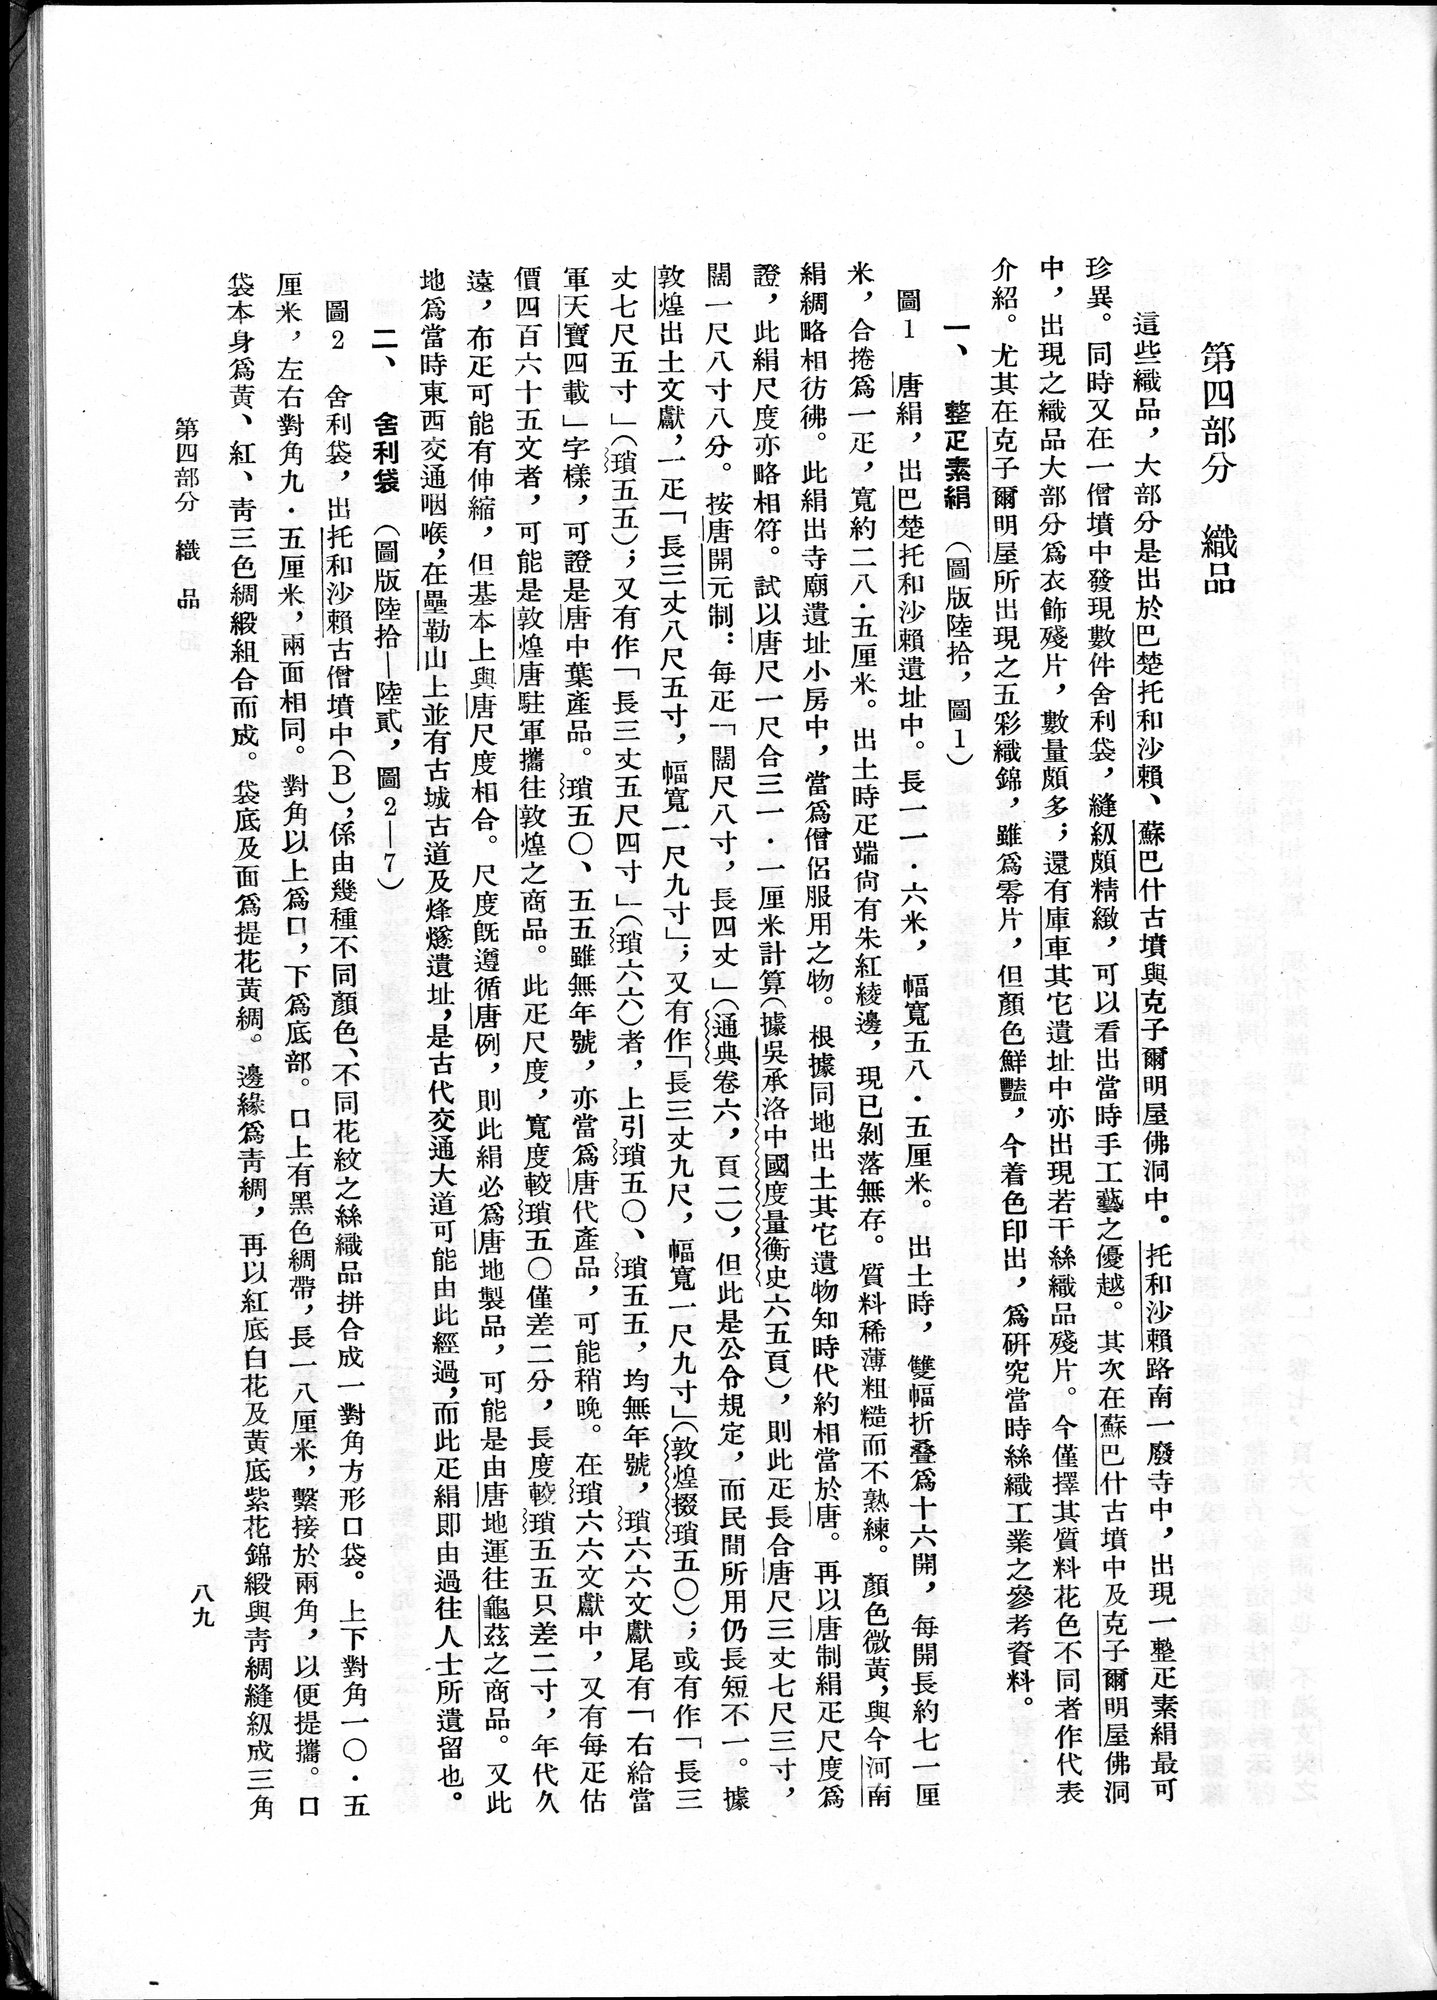 塔里木盆地考古記 : vol.1 / Page 153 (Grayscale High Resolution Image)